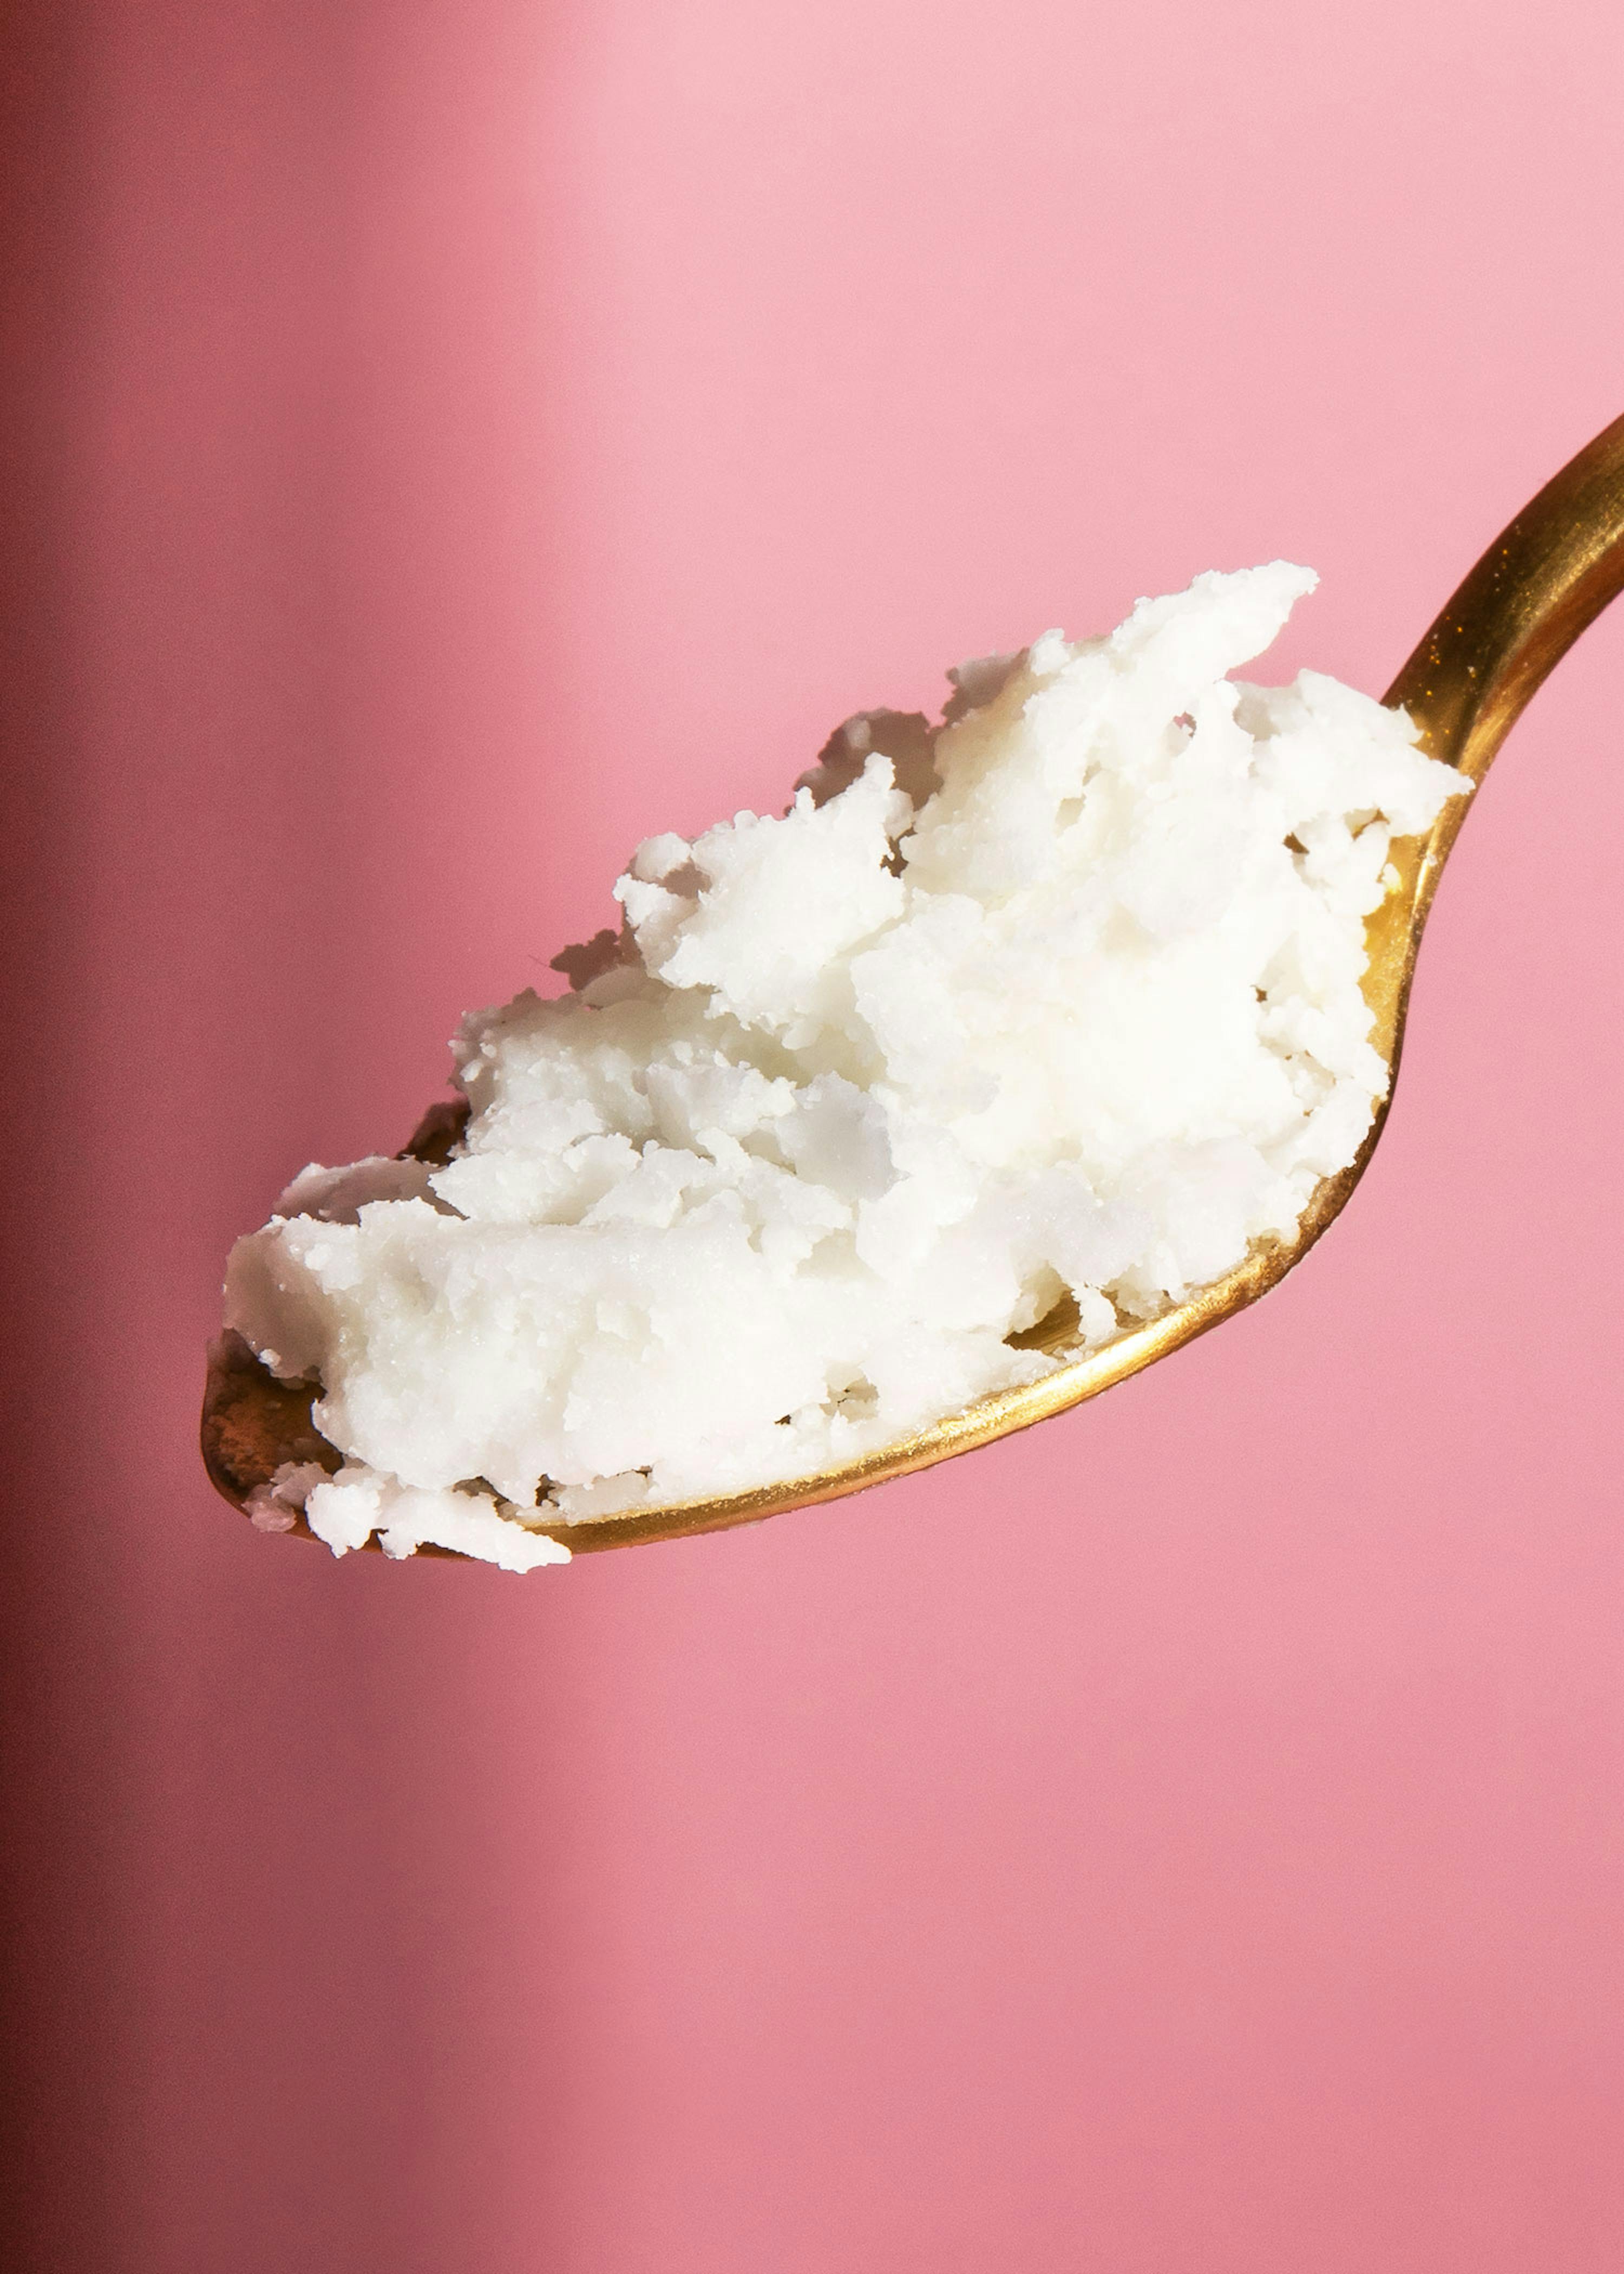 Comment réaliser sa purée de coco ou beurre de coco? – La cuisine